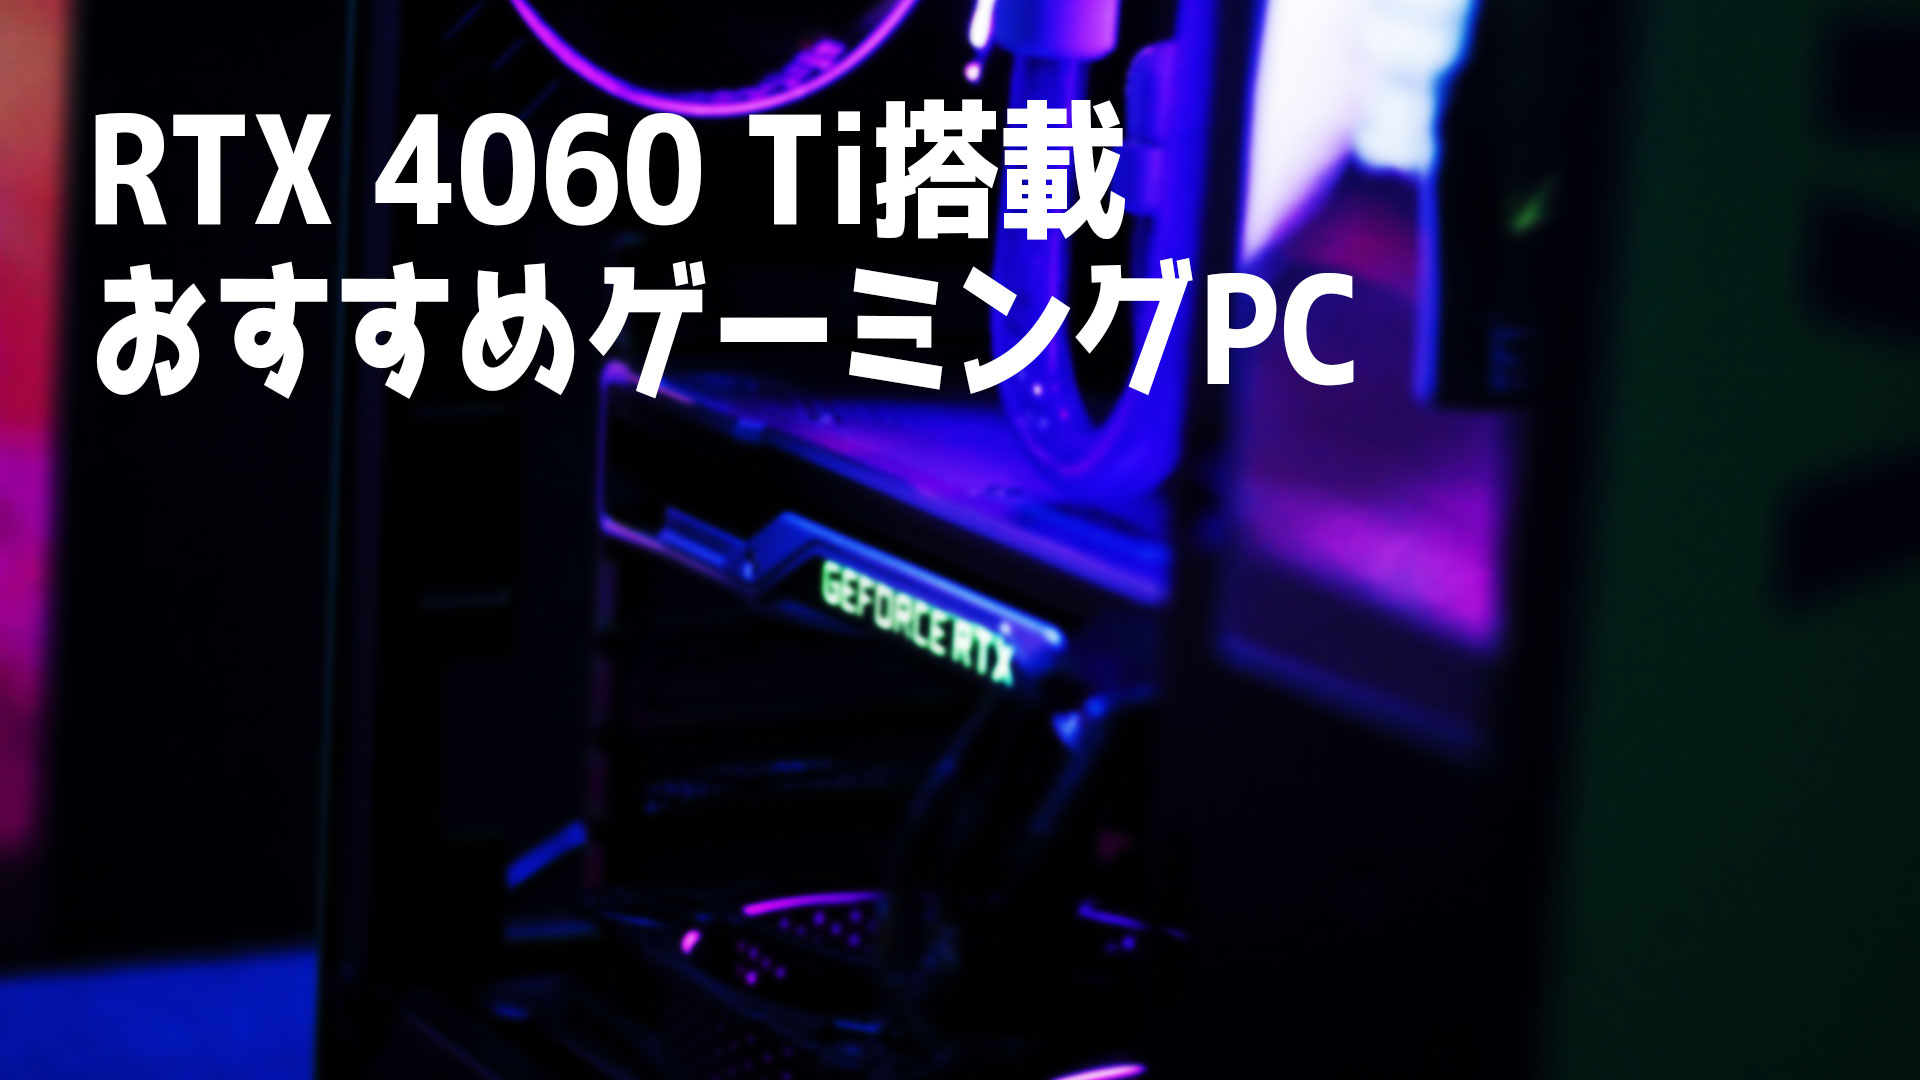 NVIDIA GeForce RTX 4060 Ti搭載のおすすめゲーミングPC4選 – クスノキの家